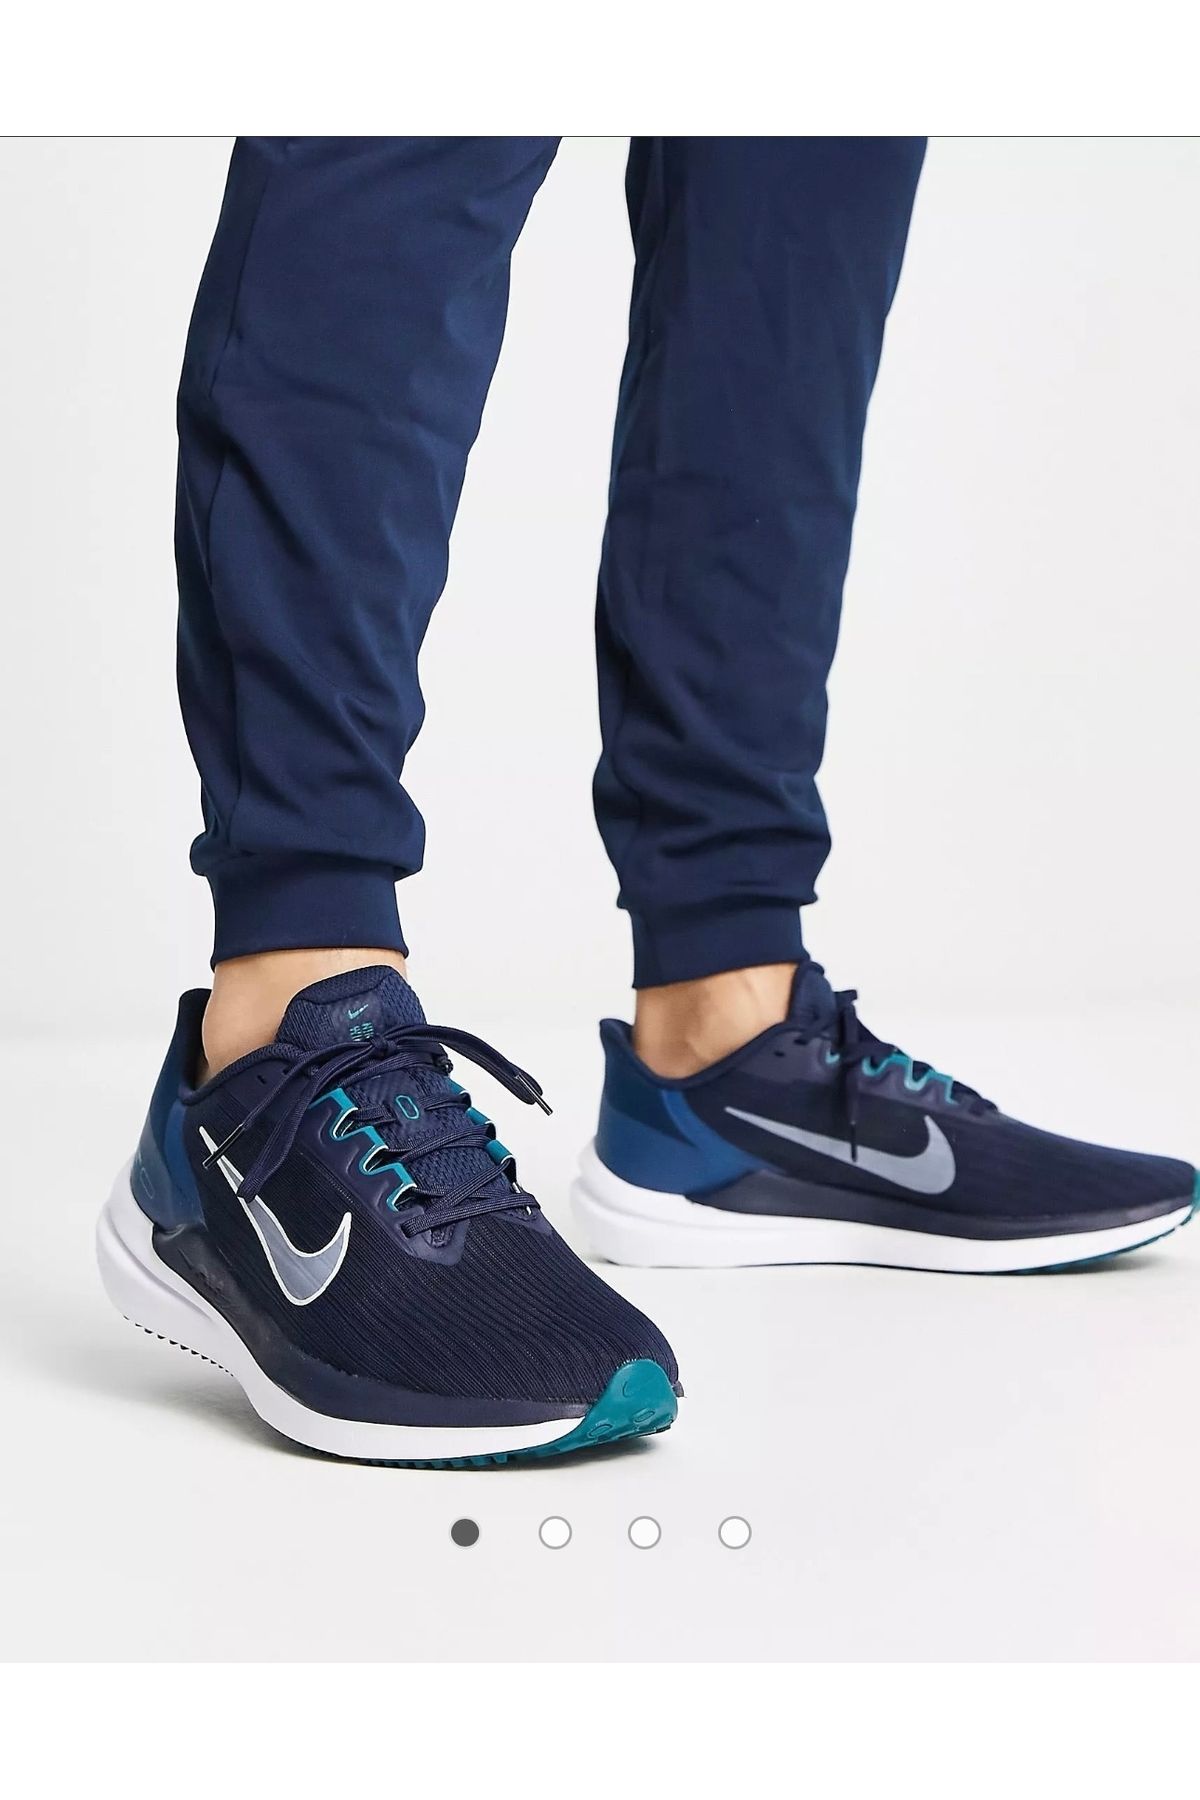 Nike Winflo 9 Erkek Yol Koşu Ayakkabı NDD SPORT